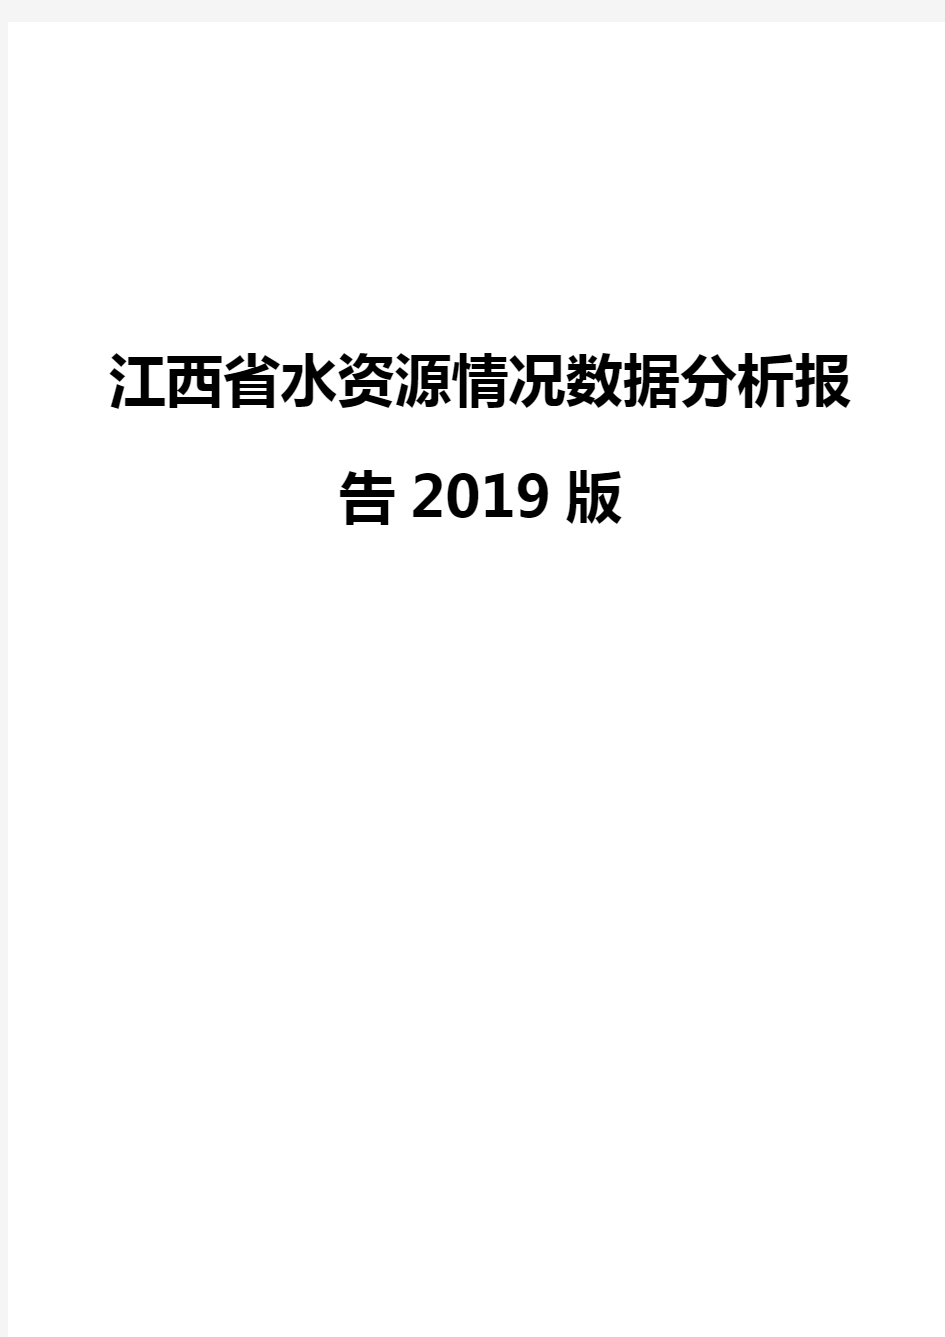 江西省水资源情况数据分析报告2019版